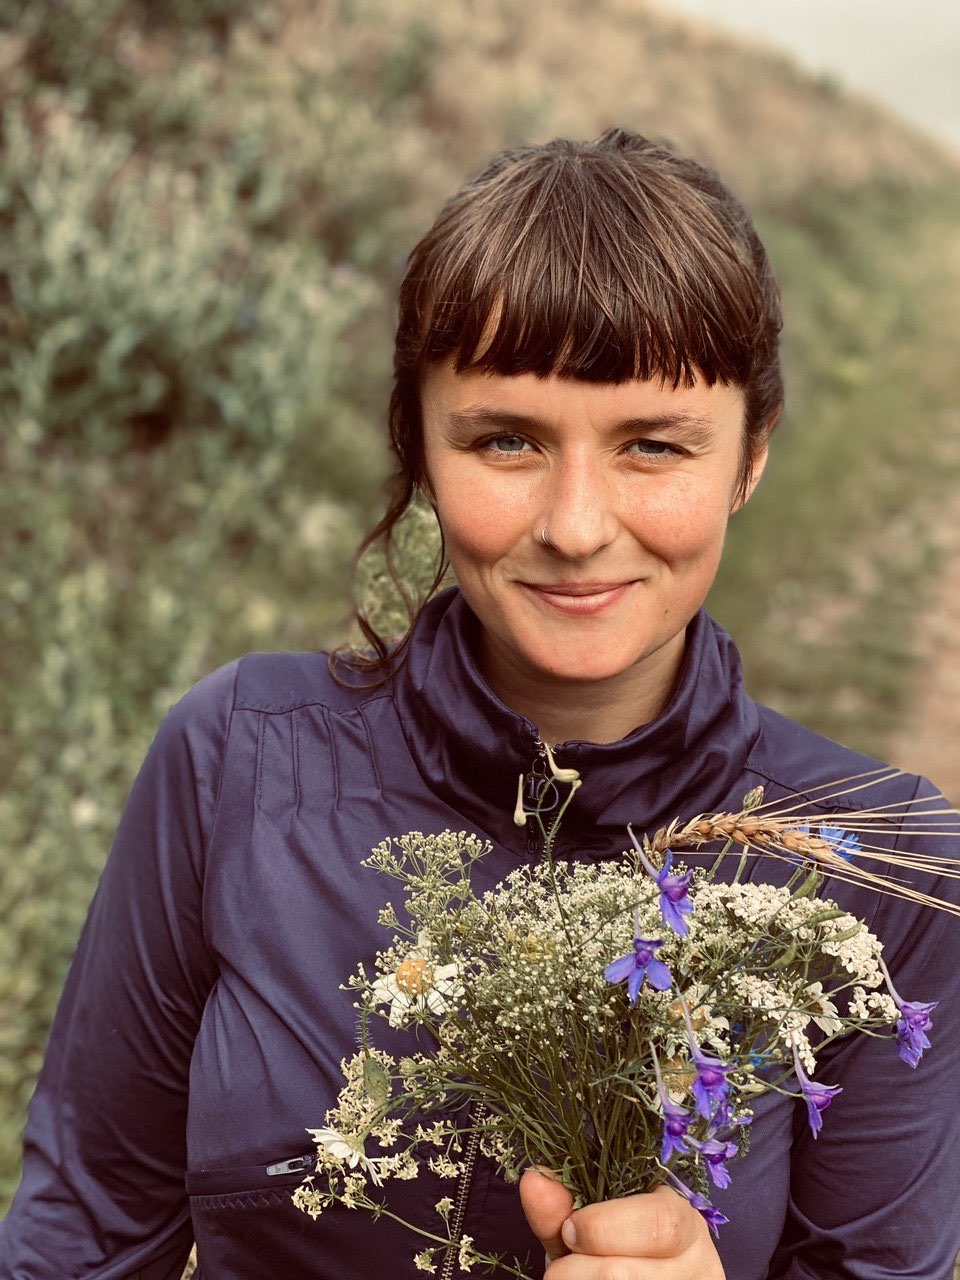 Portrait von Kollektivmitglied Judith in der Natur. Sie hält einen Blumenstrauß und lächelt in die Kamera.